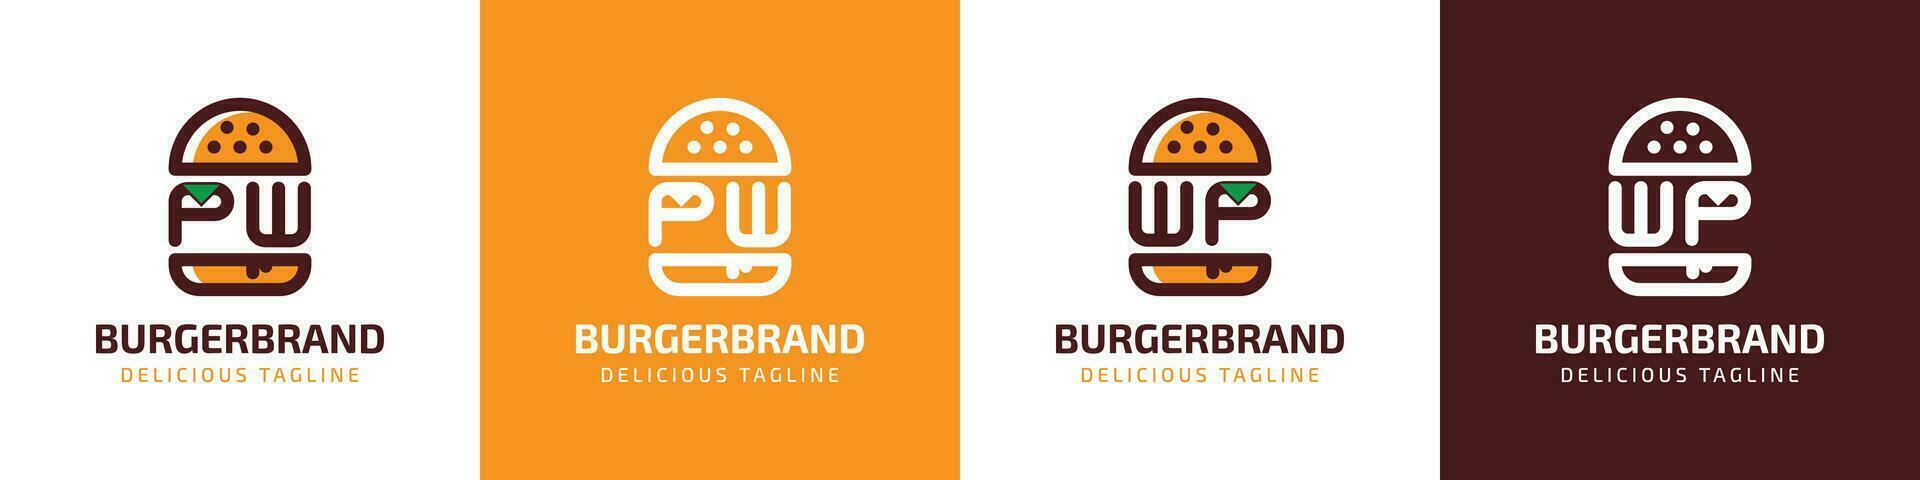 lettera pw e wp hamburger logo, adatto per qualunque attività commerciale relazionato per hamburger con pw o wp iniziali. vettore